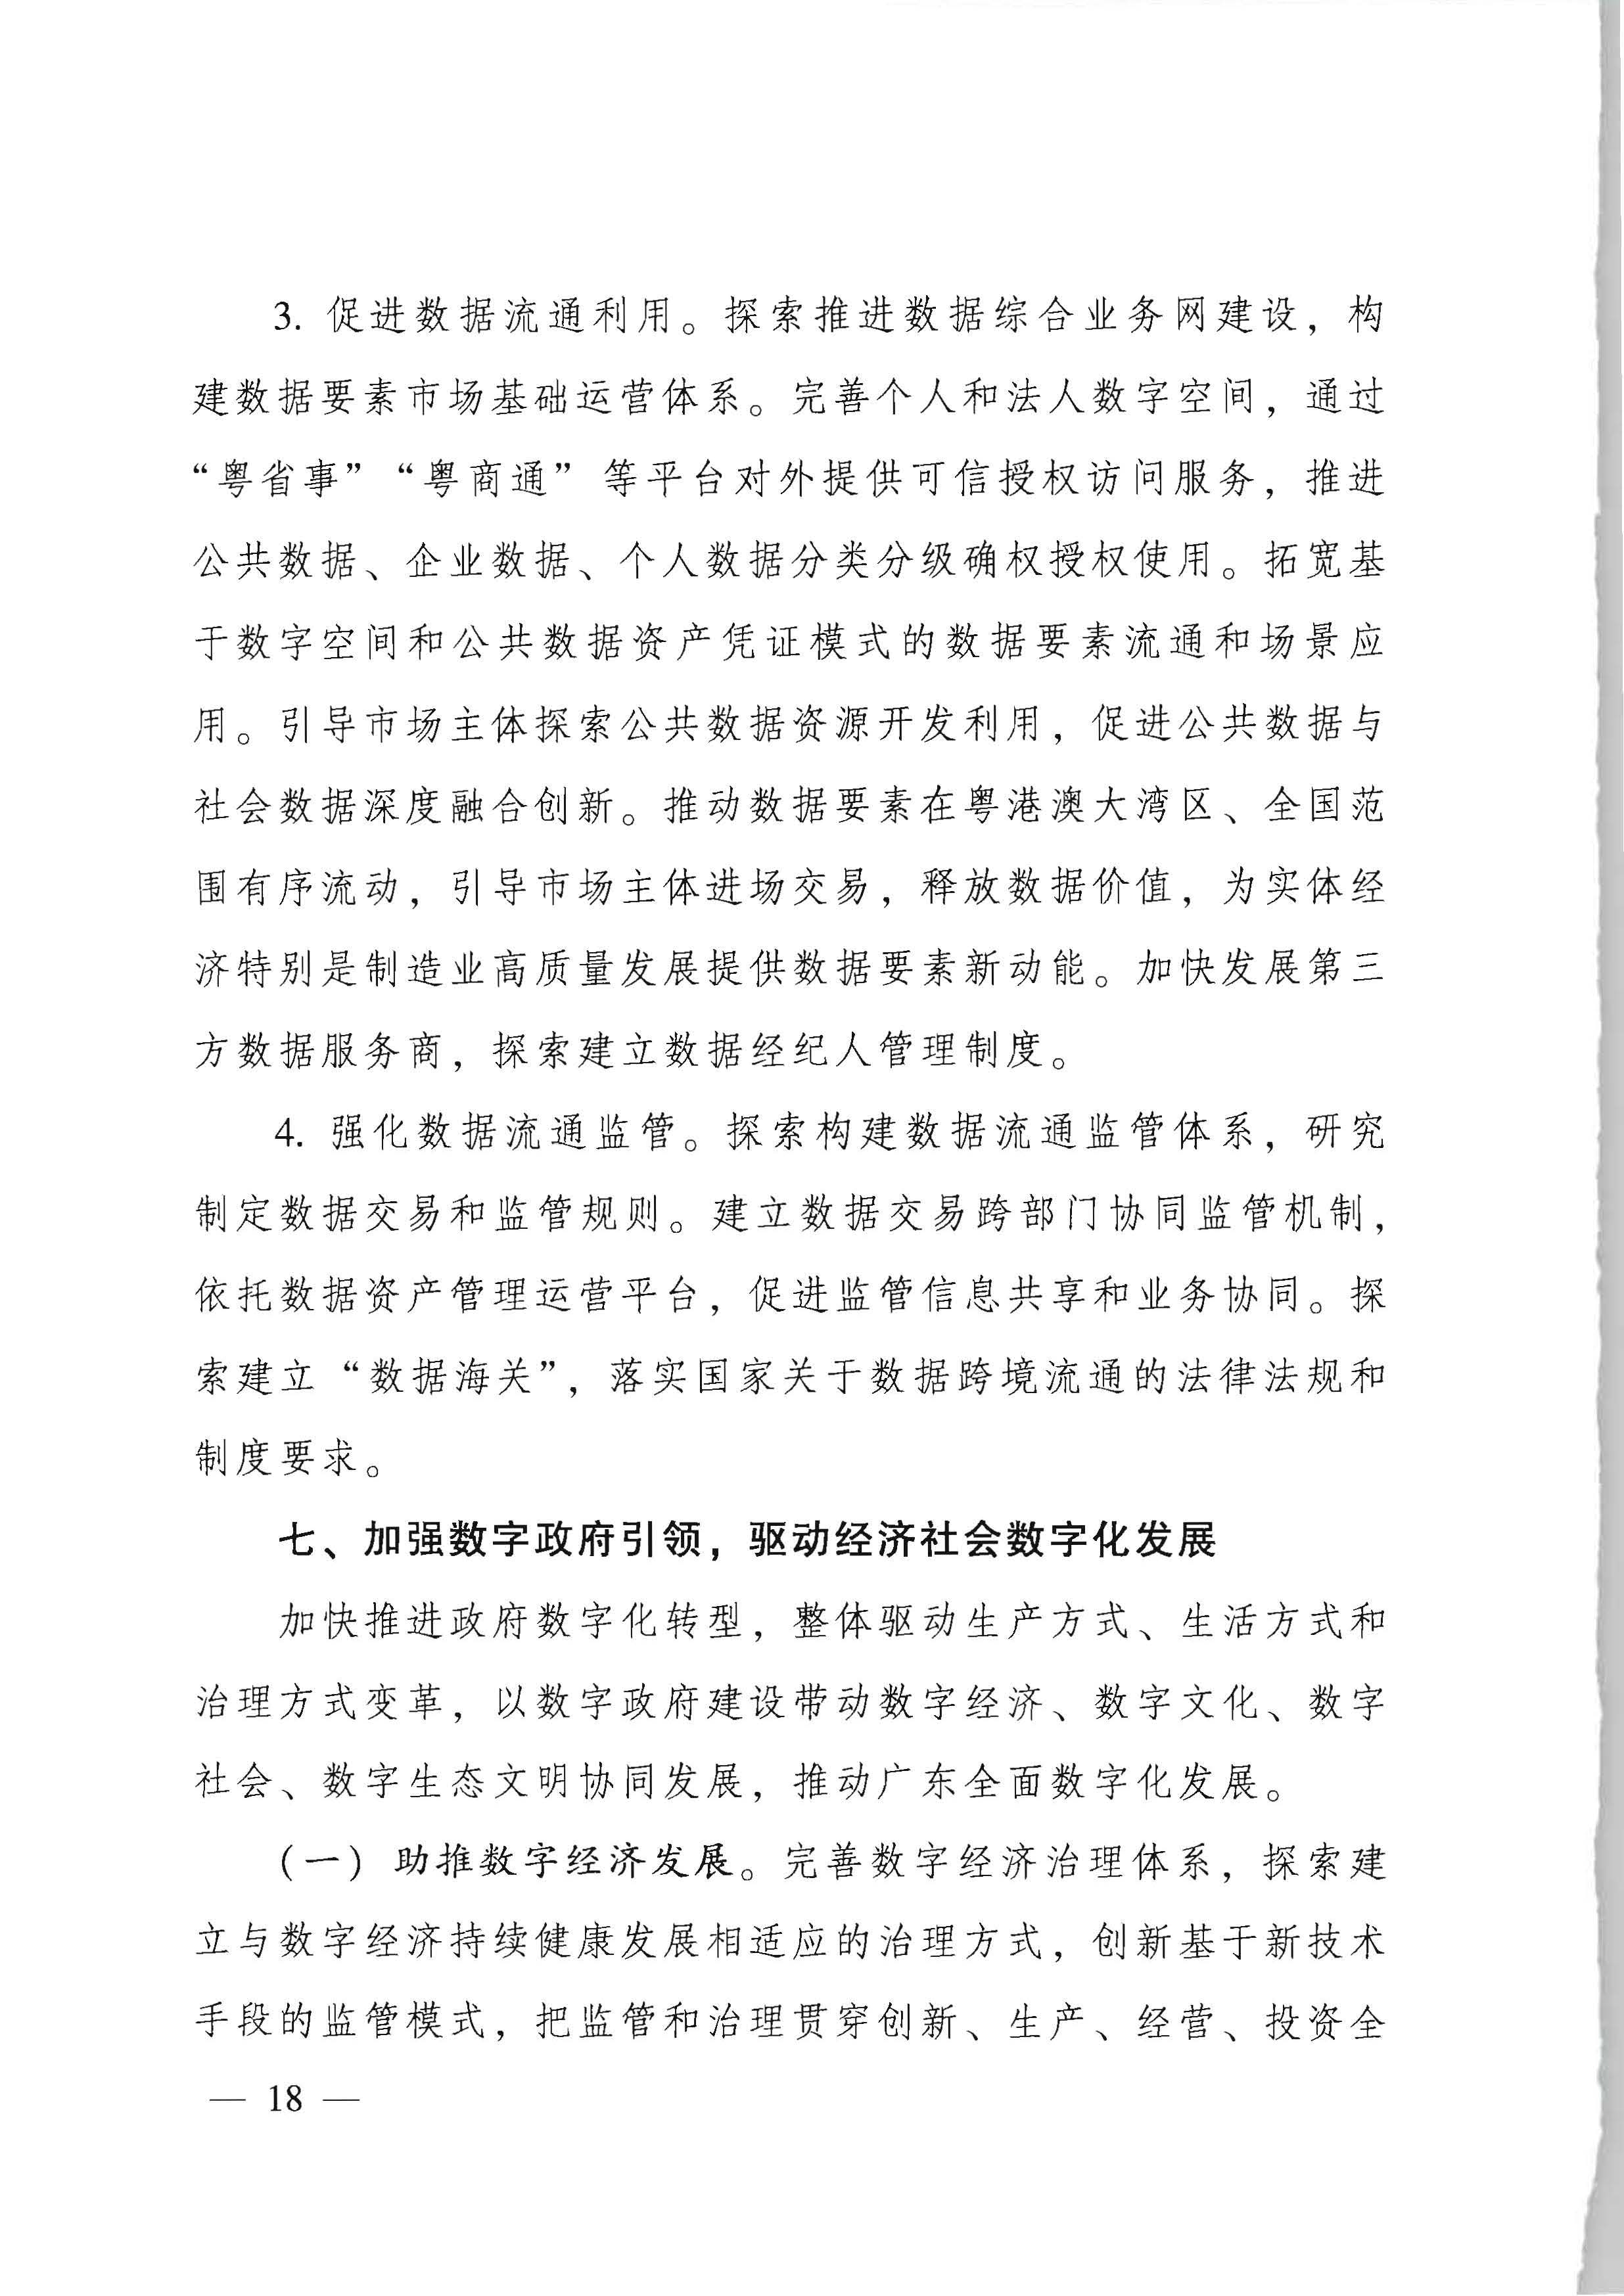 广东省人民政府关于进一步深化数字政府改革建设的实施意见_页面_18.jpg